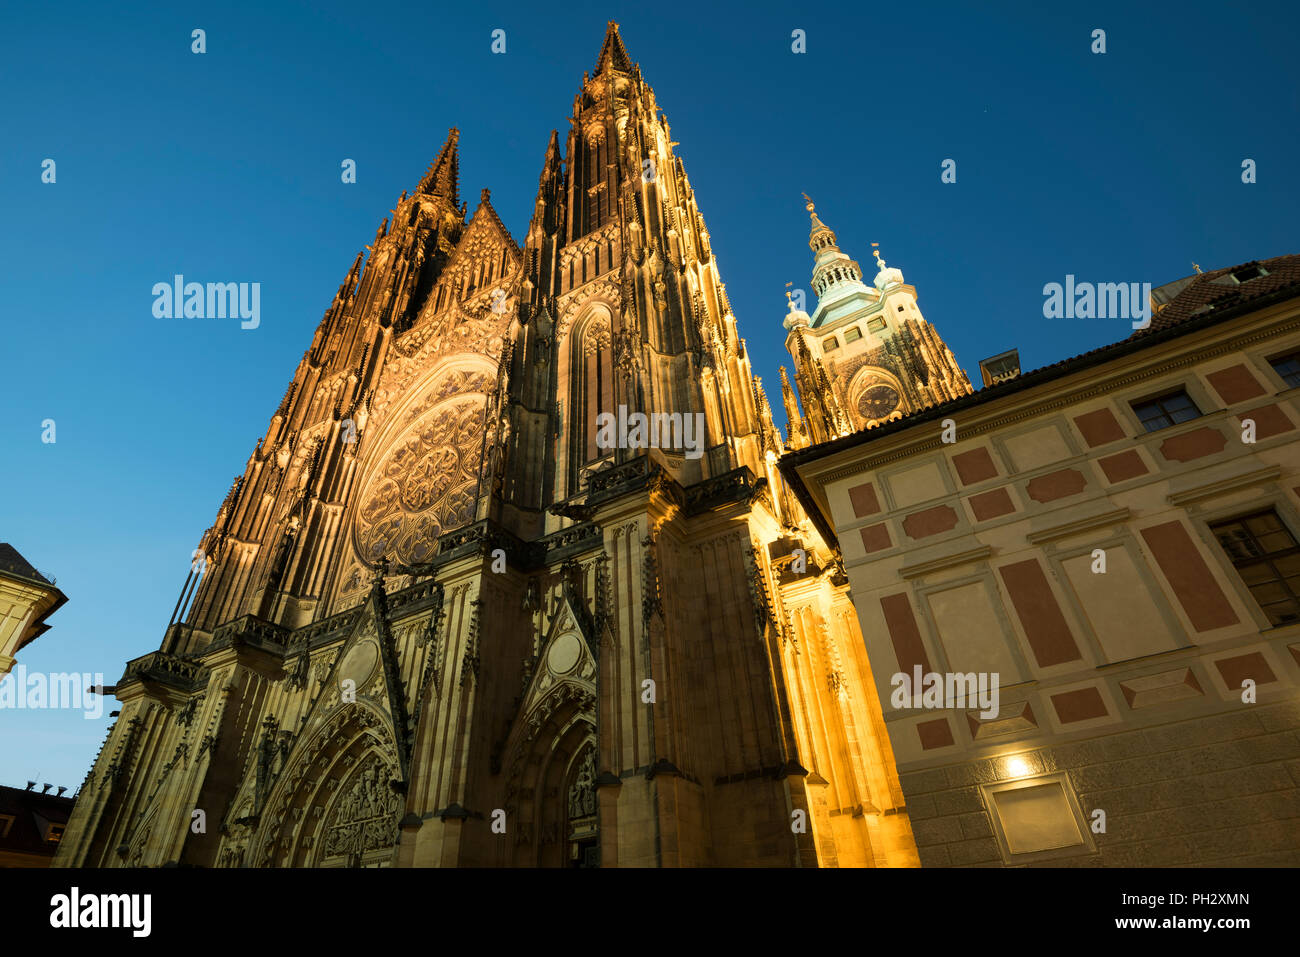 Hradcany, le château de Prague, Prague, République tchèque. Banque D'Images